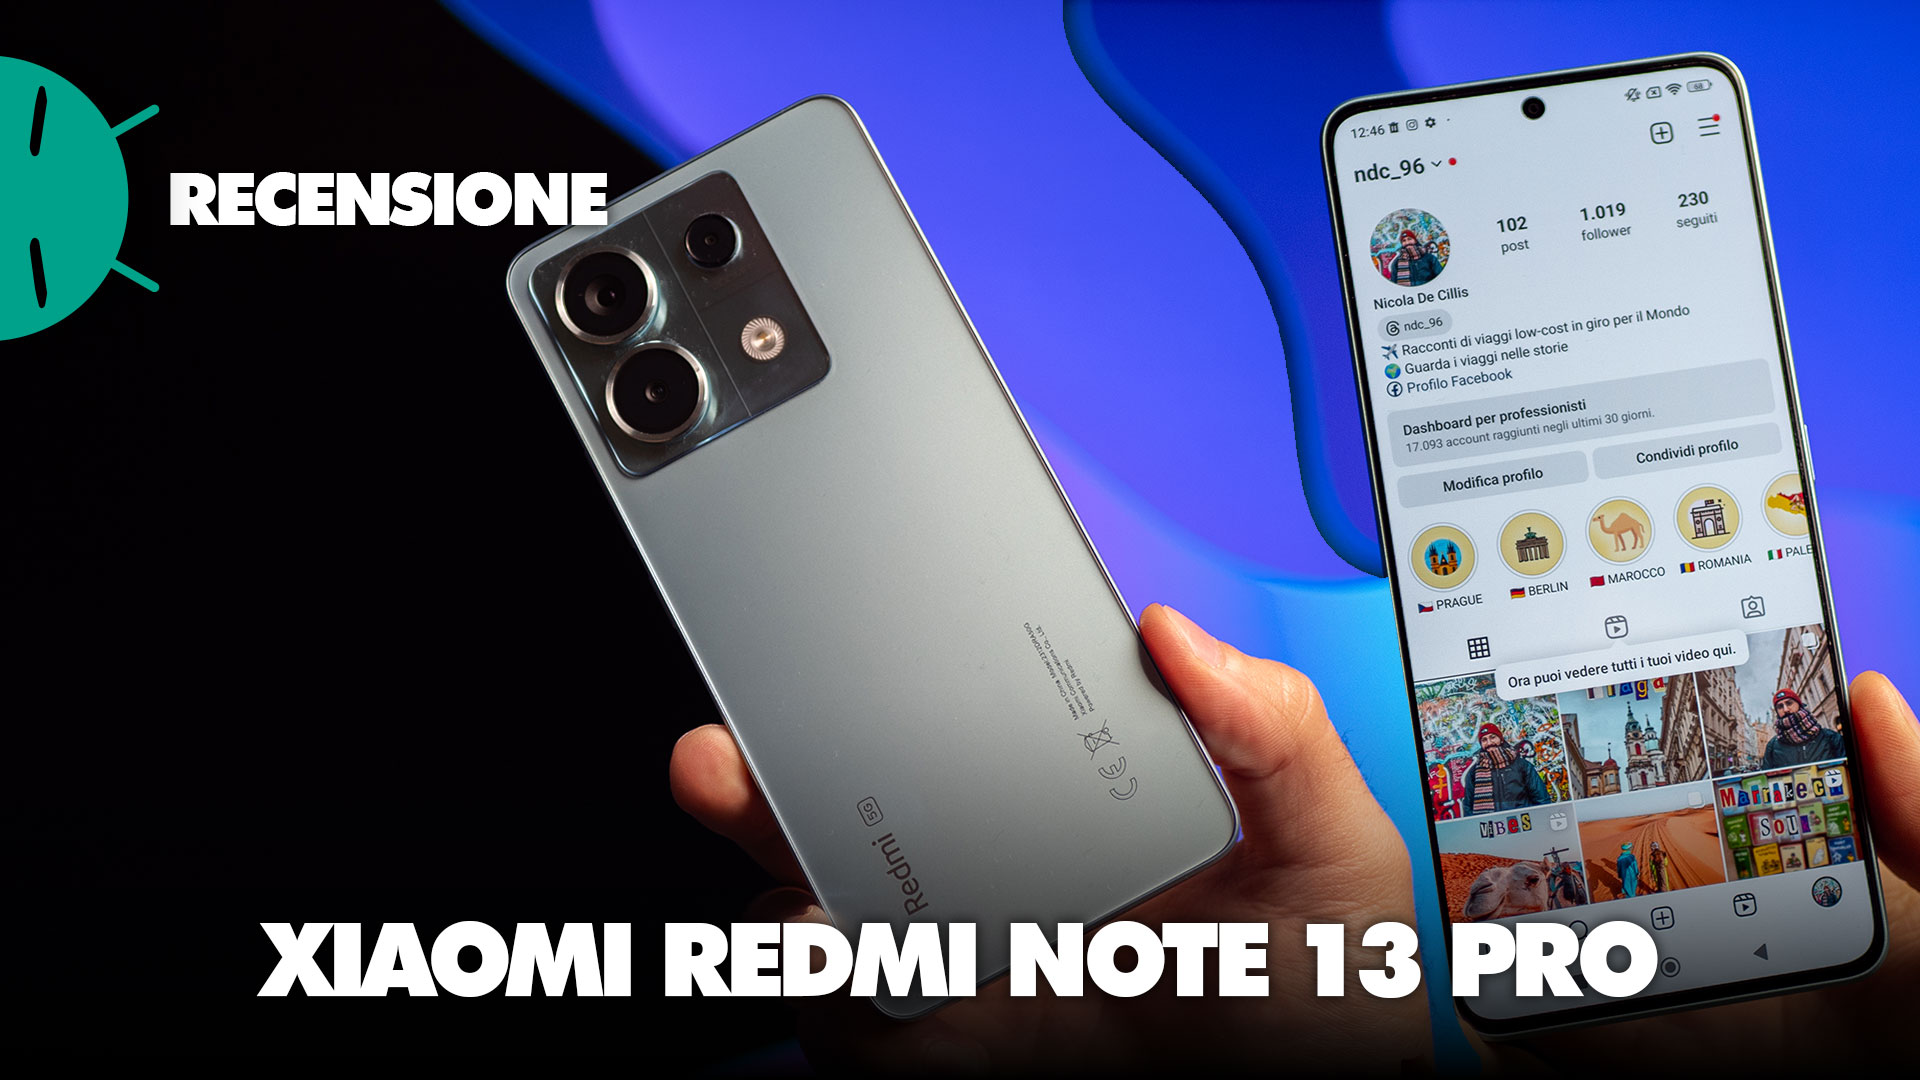 Xiaomi-Smartphone Redmi Note 13 PRO + Plus, 5G, 6,67 , Dimensity